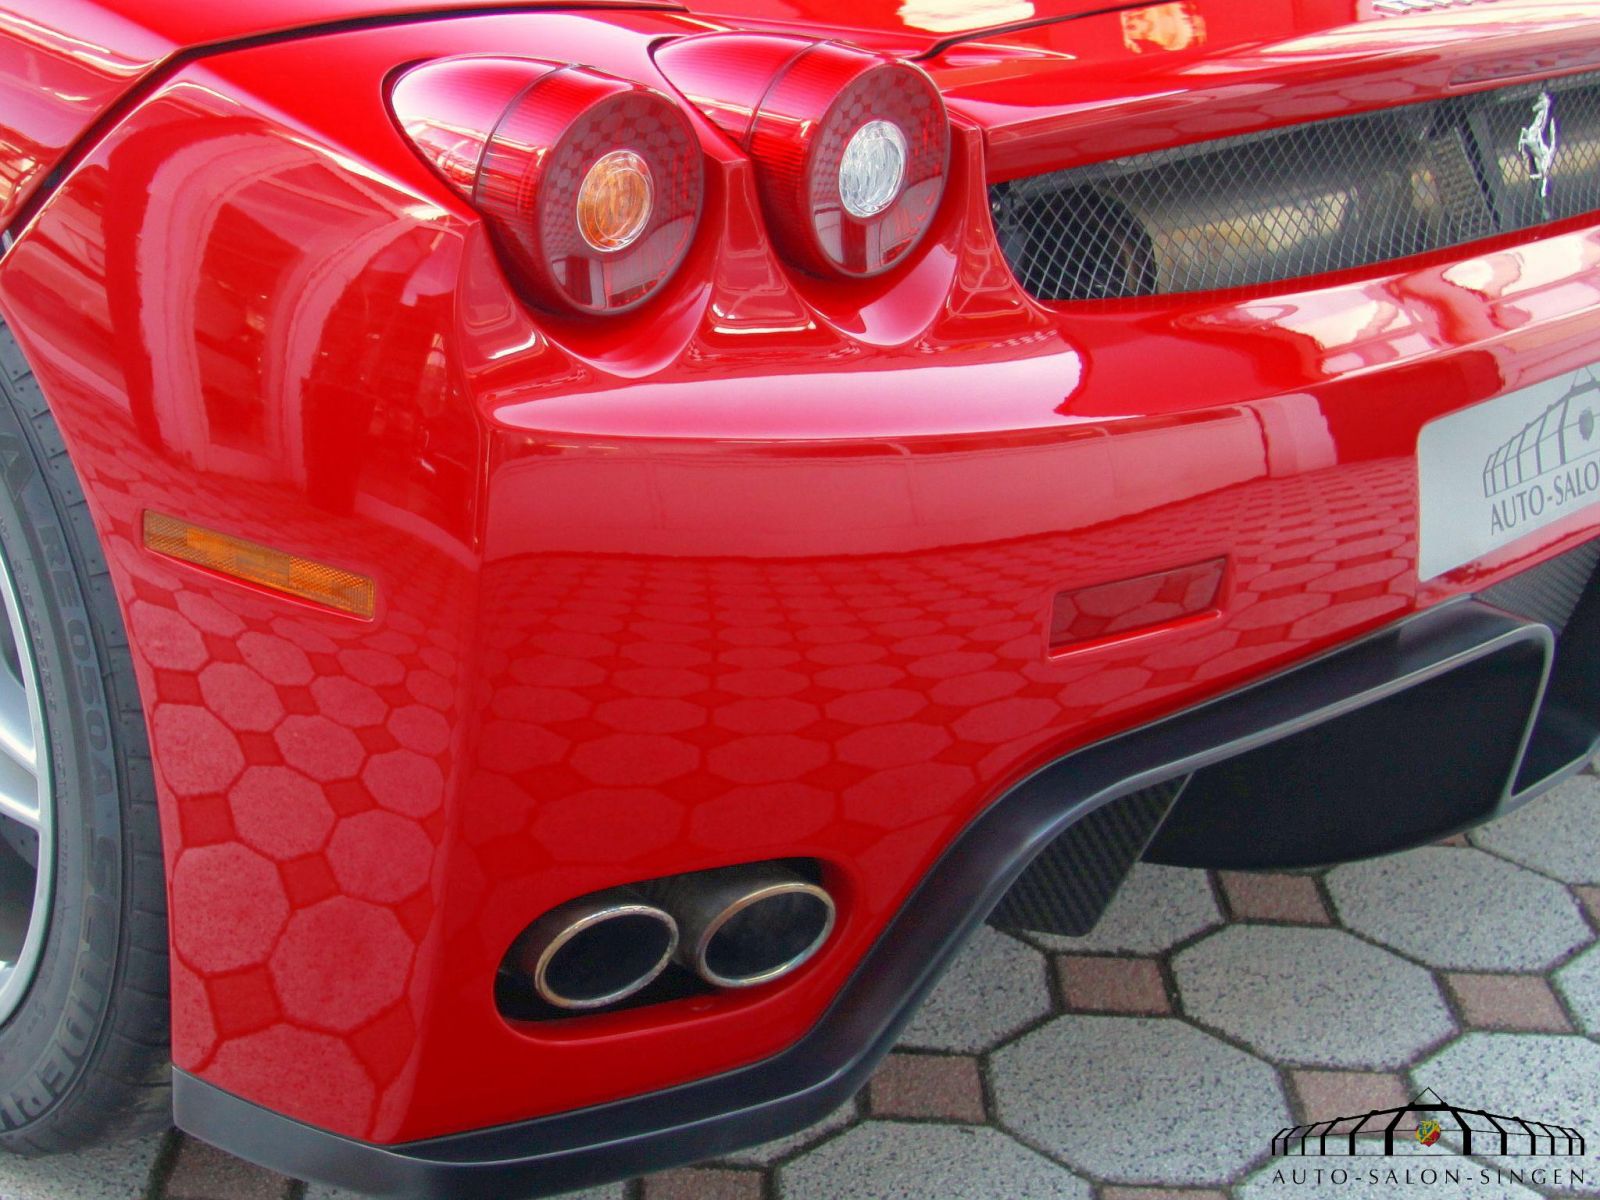 Ferrari Enzo Ferrari Coupe Auto Salon Singen